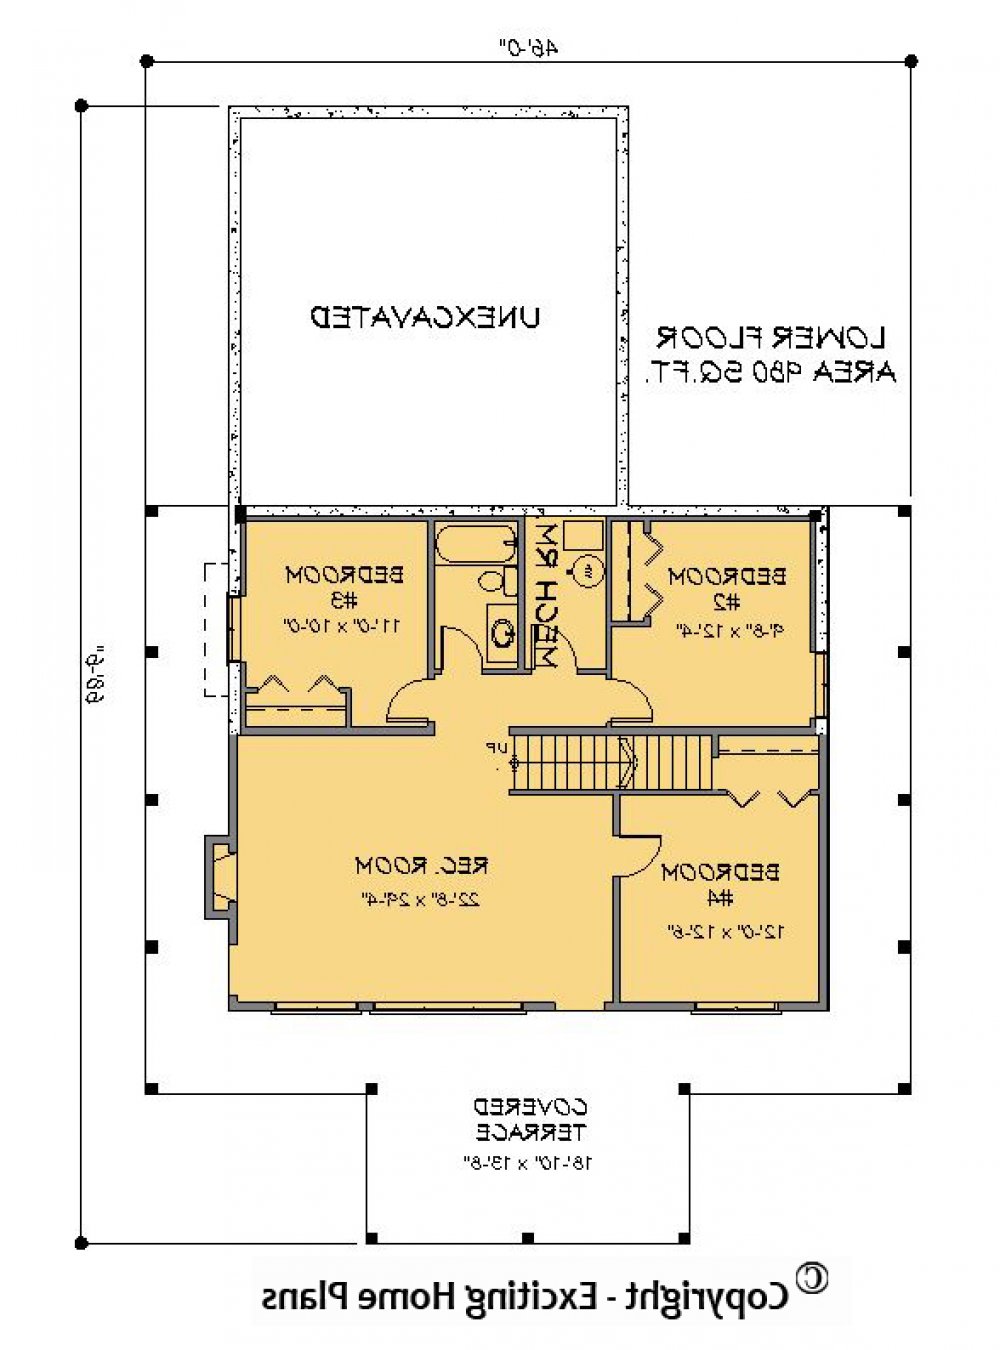 House Plan E1182-10 Lower Floor Plan REVERSE